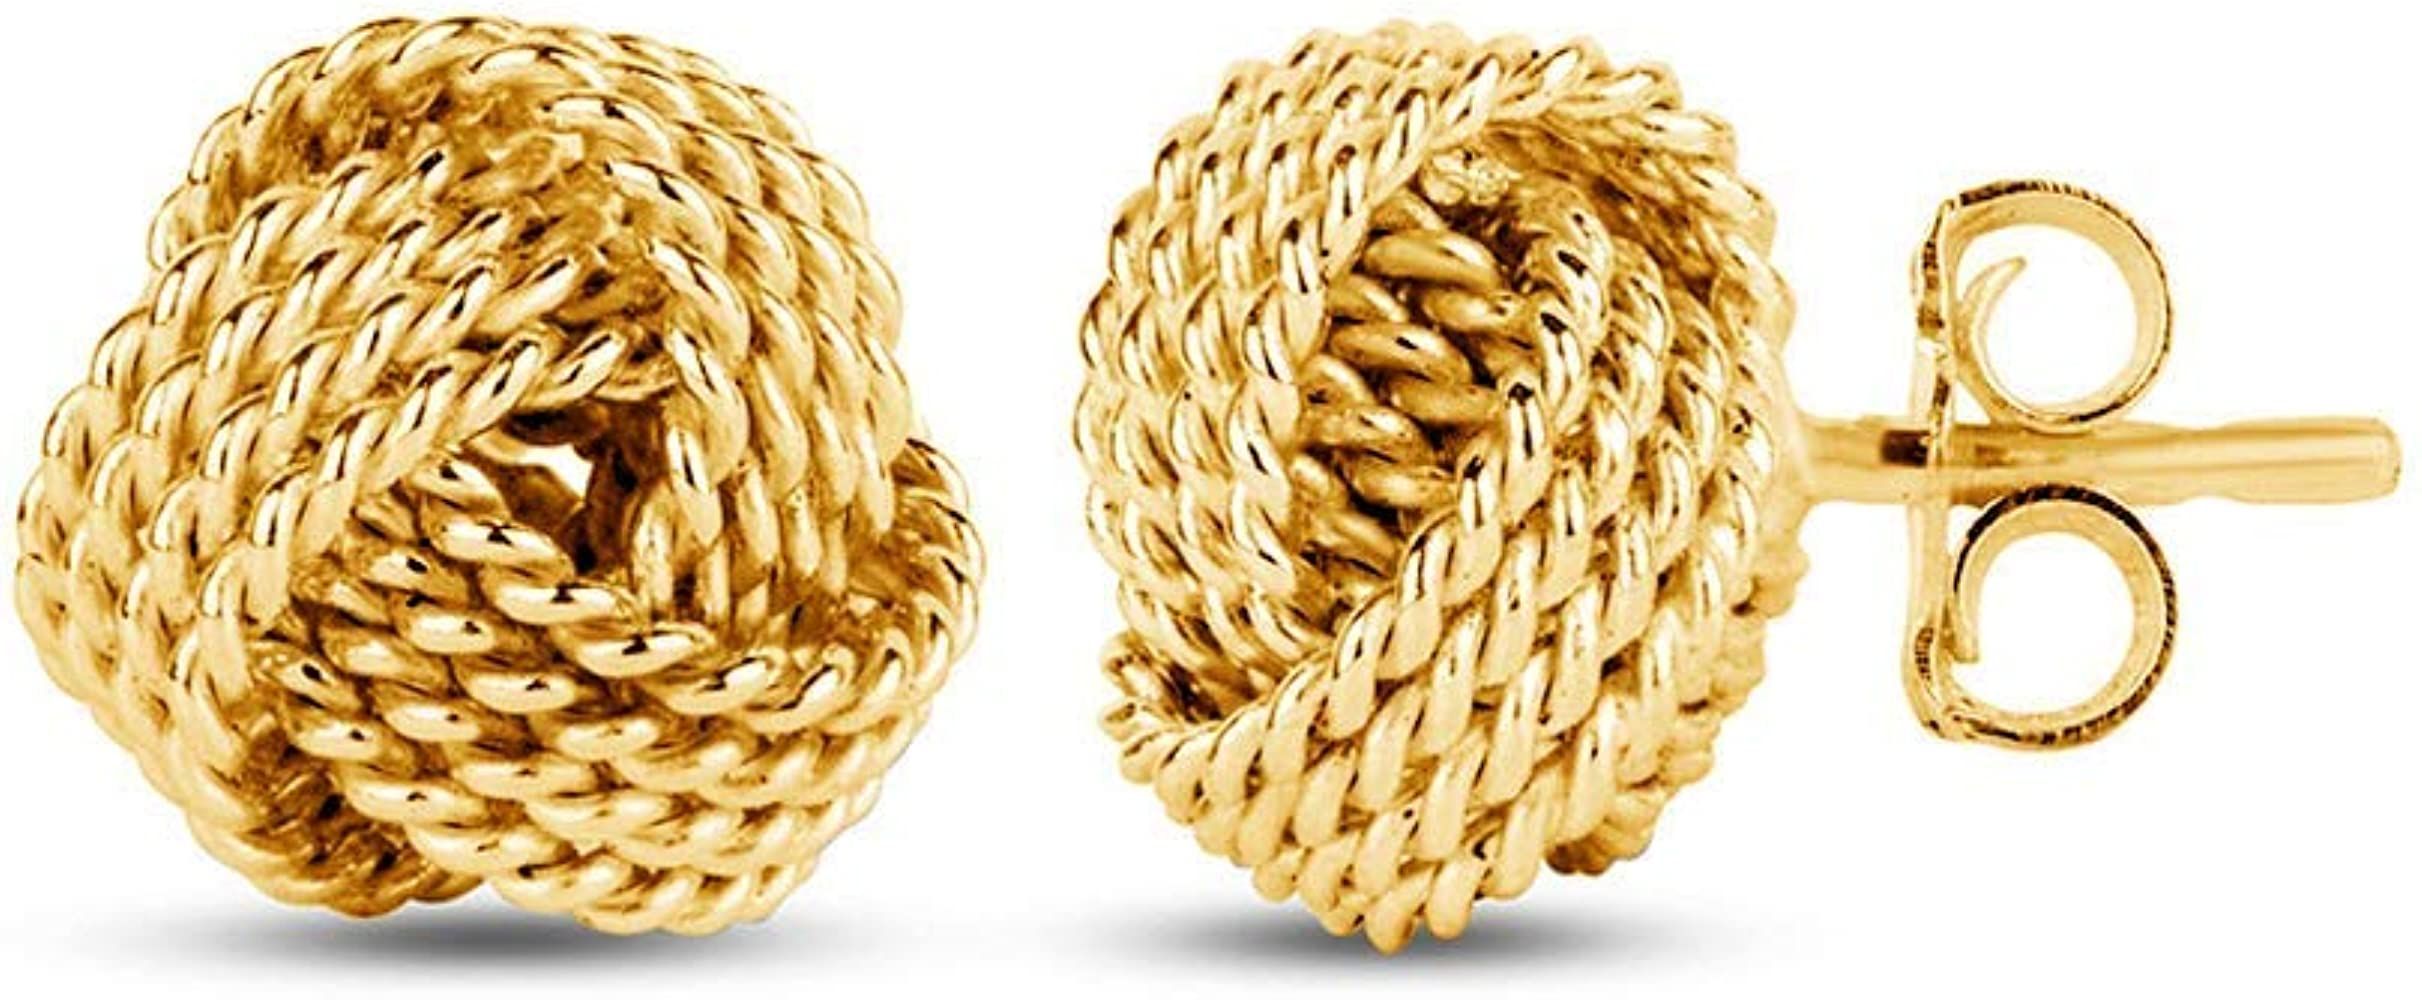 Amazon.com: LeCalla Sterling Silver Jewelry Gold-Plated Italian Design Diamond-Cut Wire Love Knot... | Amazon (US)